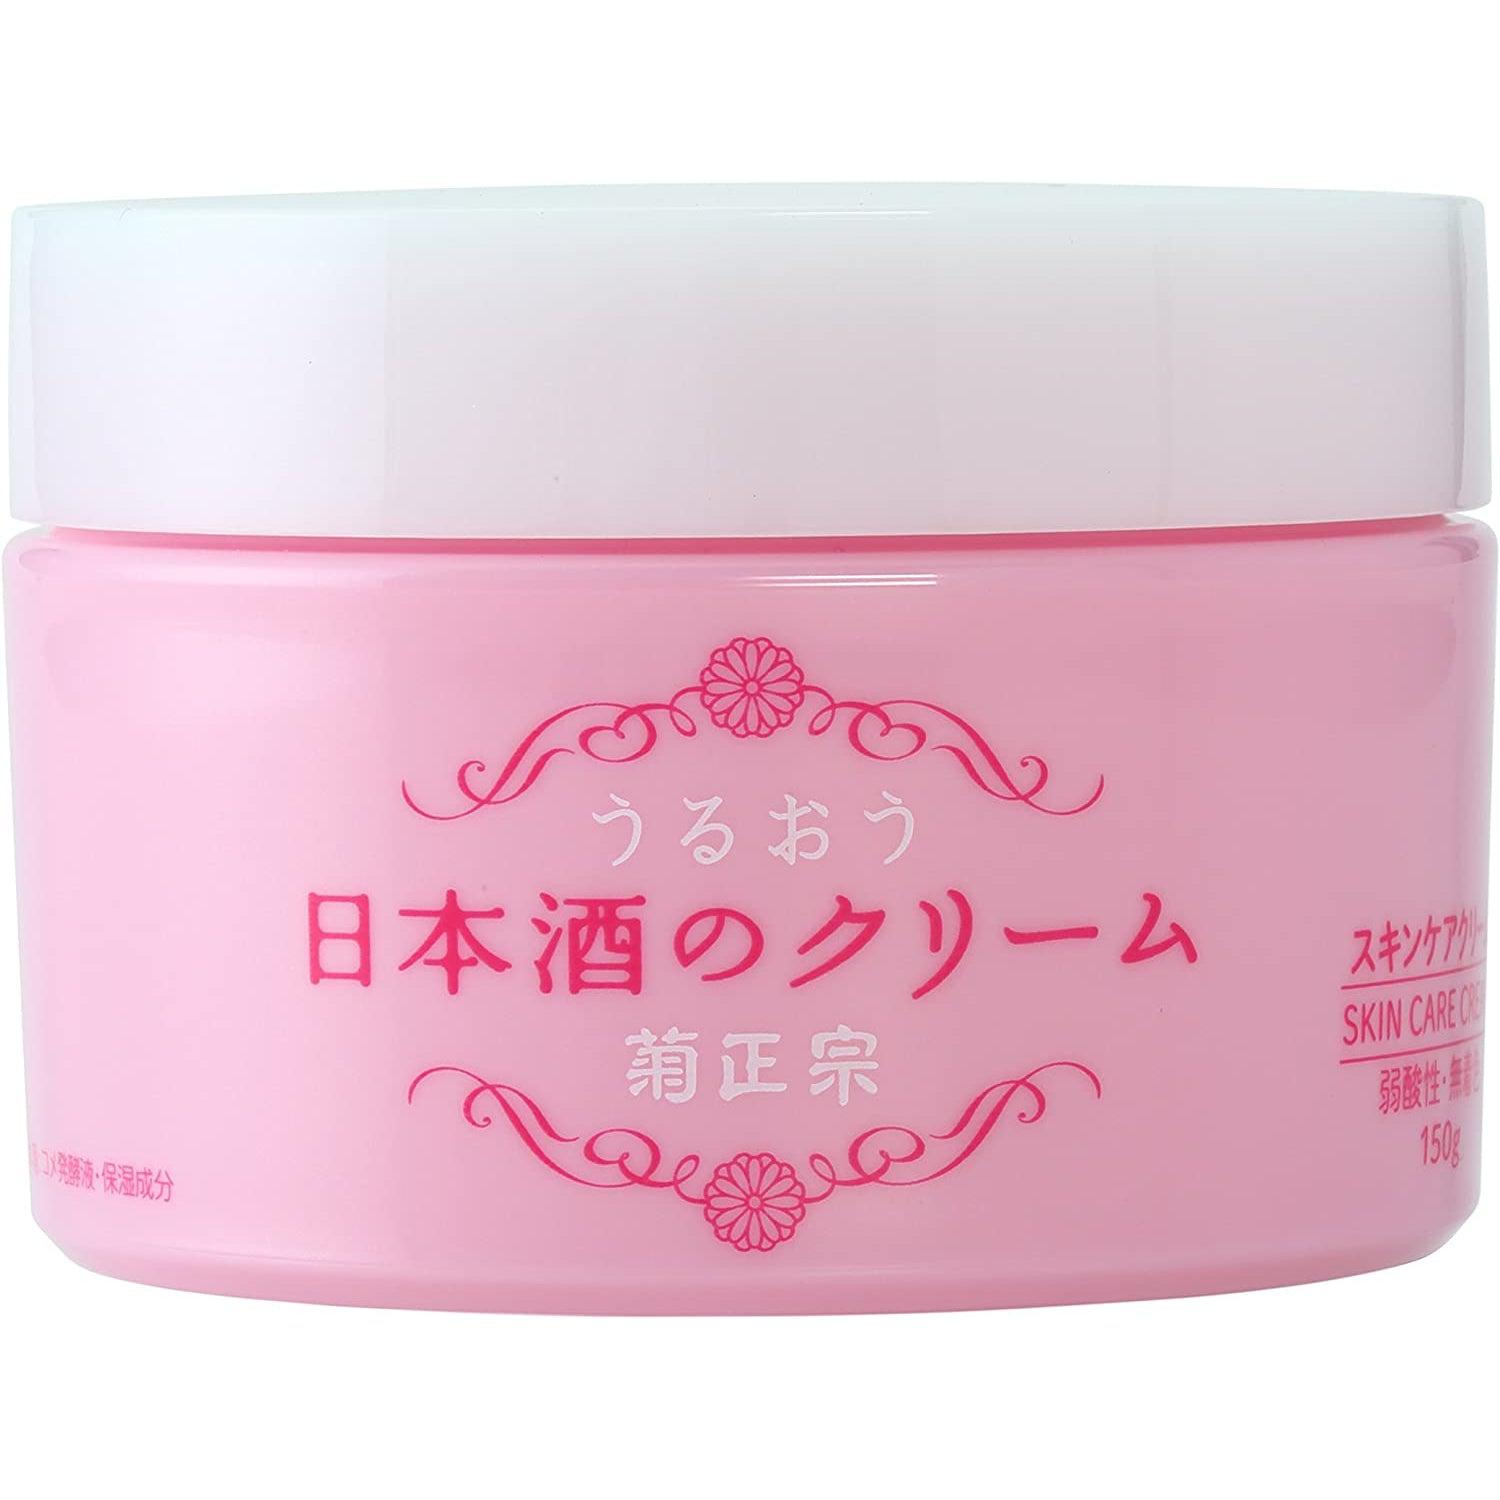 Kikumasamune Japanese Sake Skin Care Cream 150g